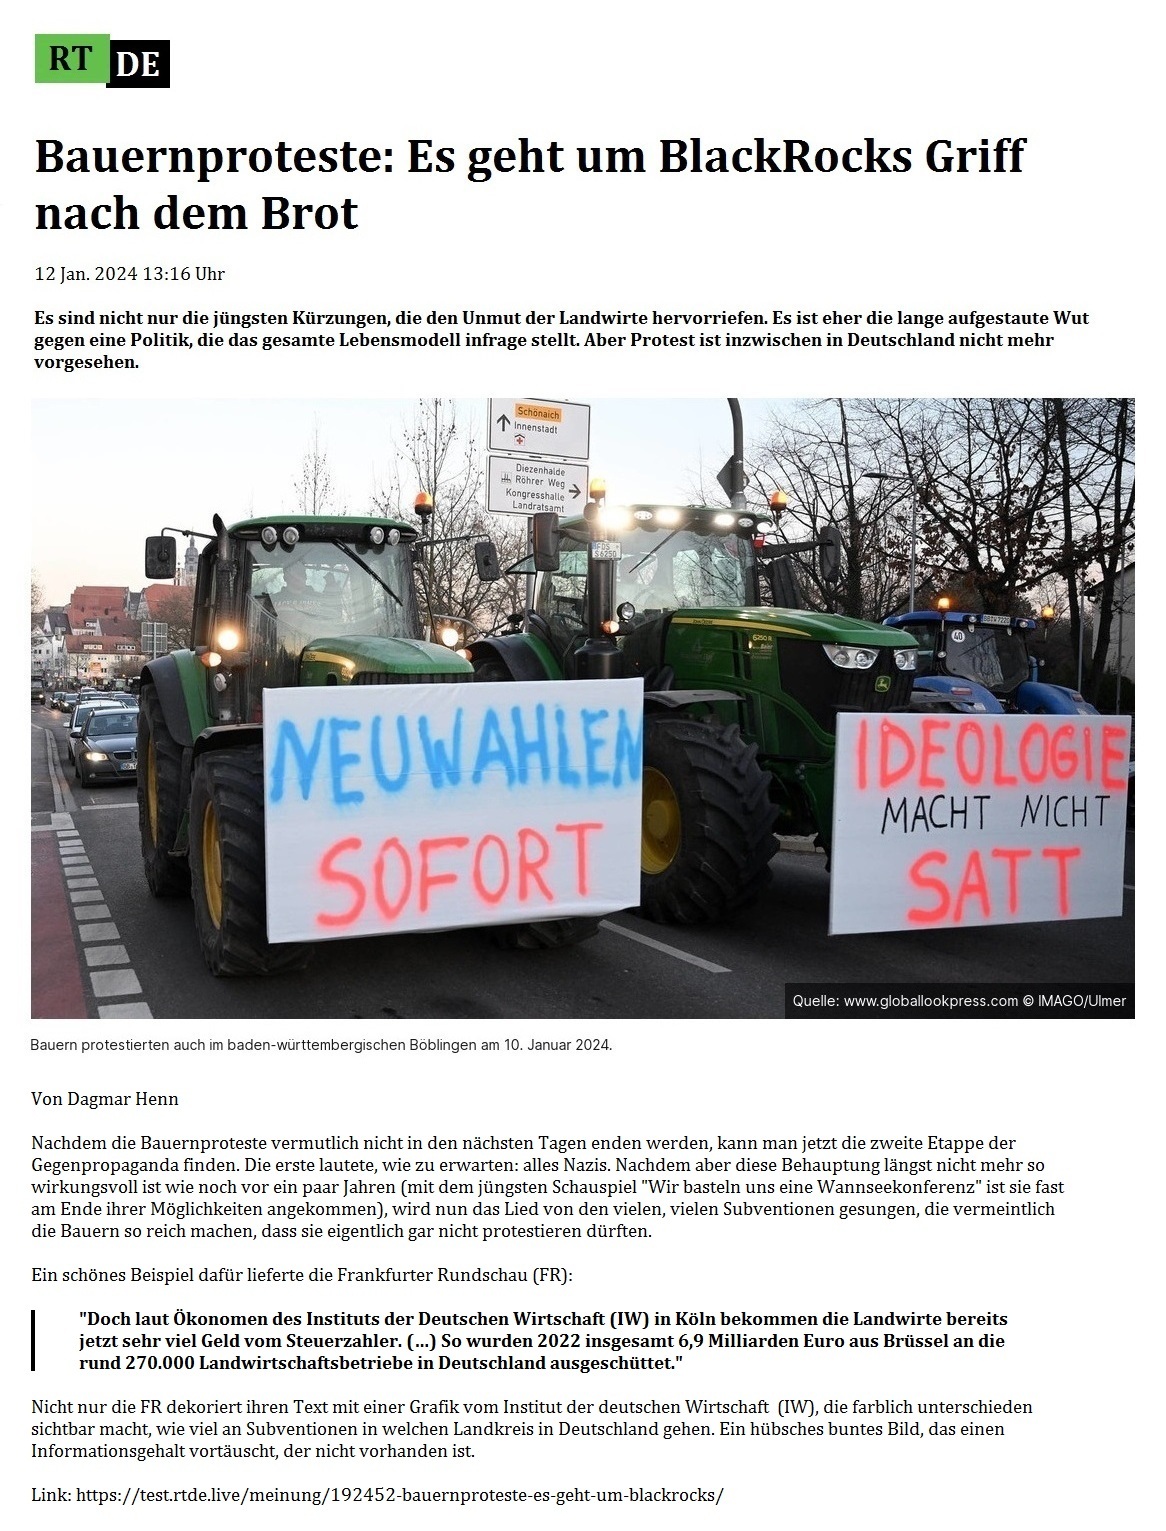 Bauernproteste: Es geht um BlackRocks Griff nach dem Brot - 12 Jan. 2024 13:16 Uhr - Es sind nicht nur die jngsten Krzungen, die den Unmut der Landwirte hervorriefen. Es ist eher die lange aufgestaute Wut gegen eine Politik, die das gesamte Lebensmodell infrage stellt. Aber Protest ist inzwischen in Deutschland nicht mehr vorgesehen. - Von Dagmar Henn - 12 Jan. 2024 13:16 Uhr - RT DE - Link: https://test.rtde.live/meinung/192452-bauernproteste-es-geht-um-blackrocks/